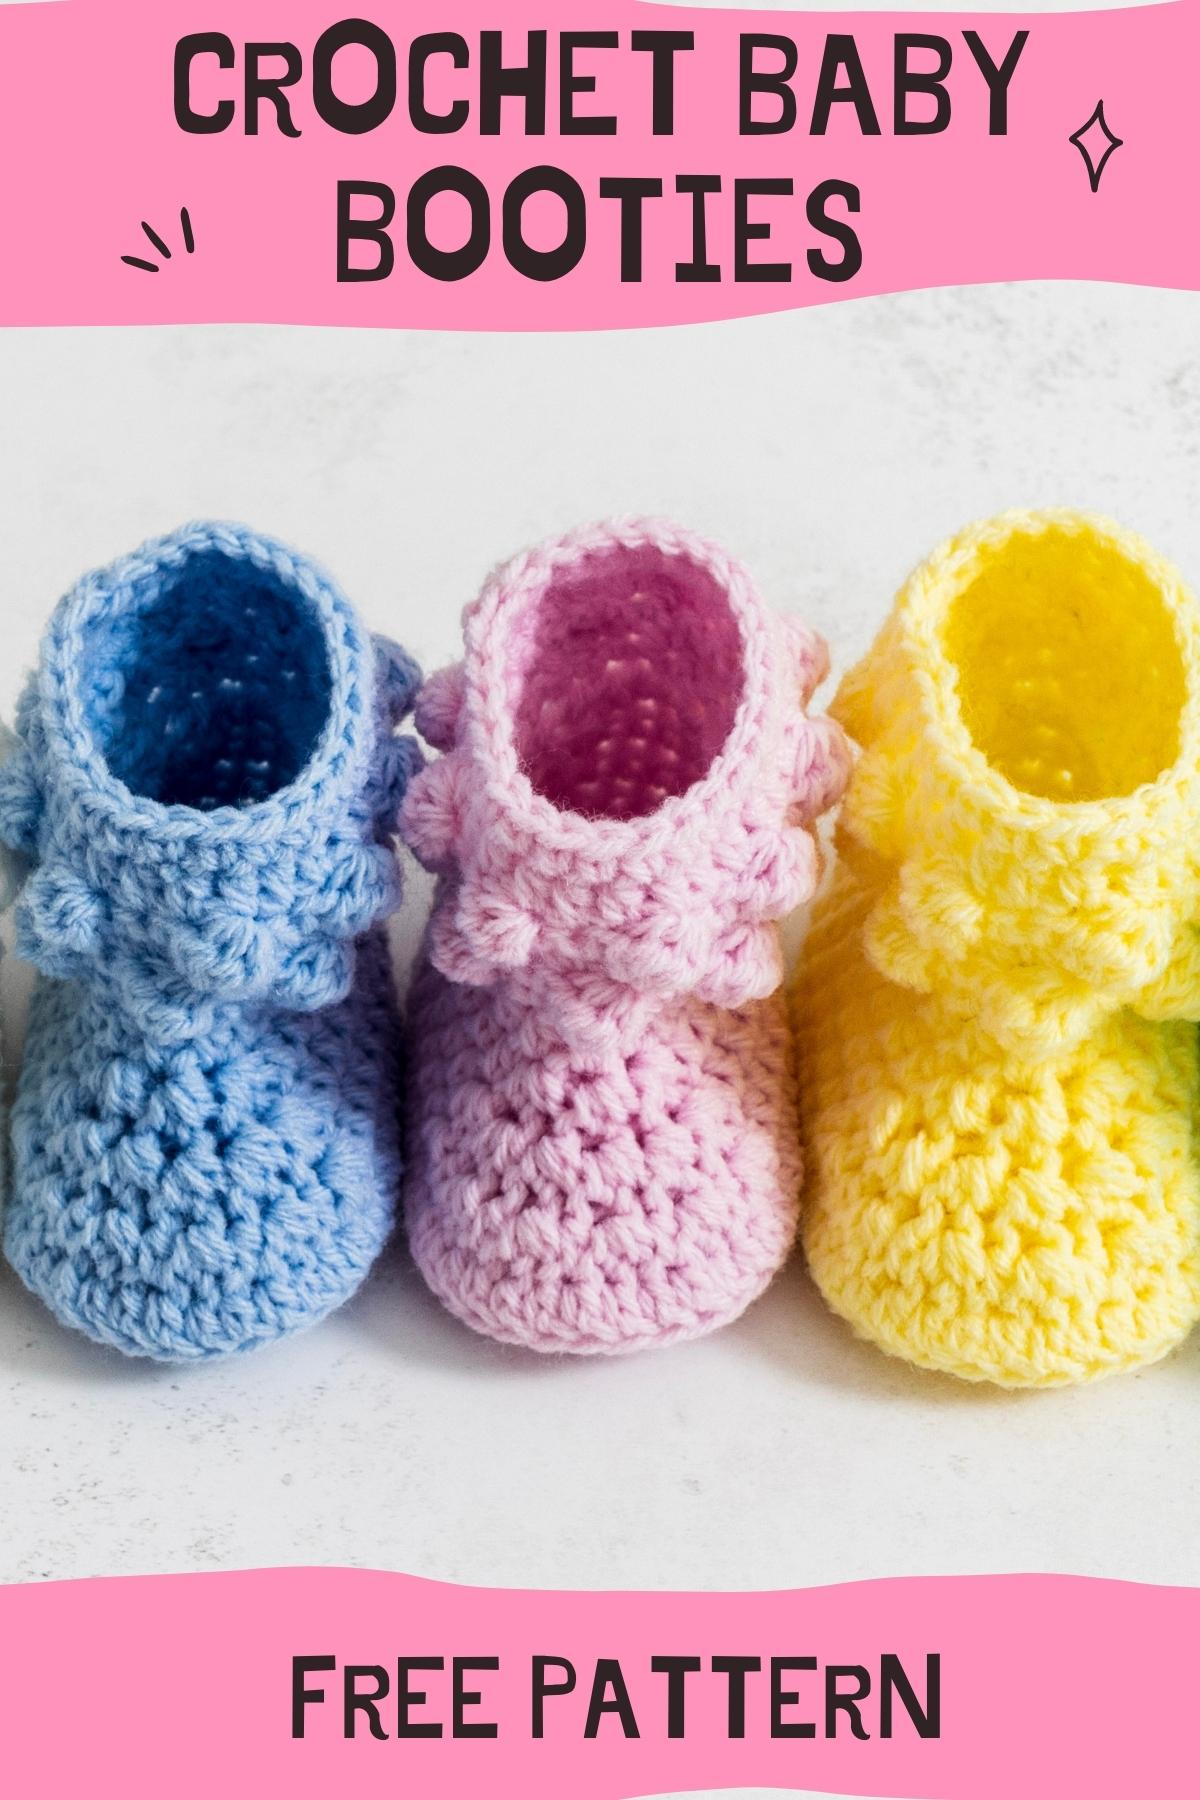 Crochet Baby Booties Free Crochet Pattern Pin